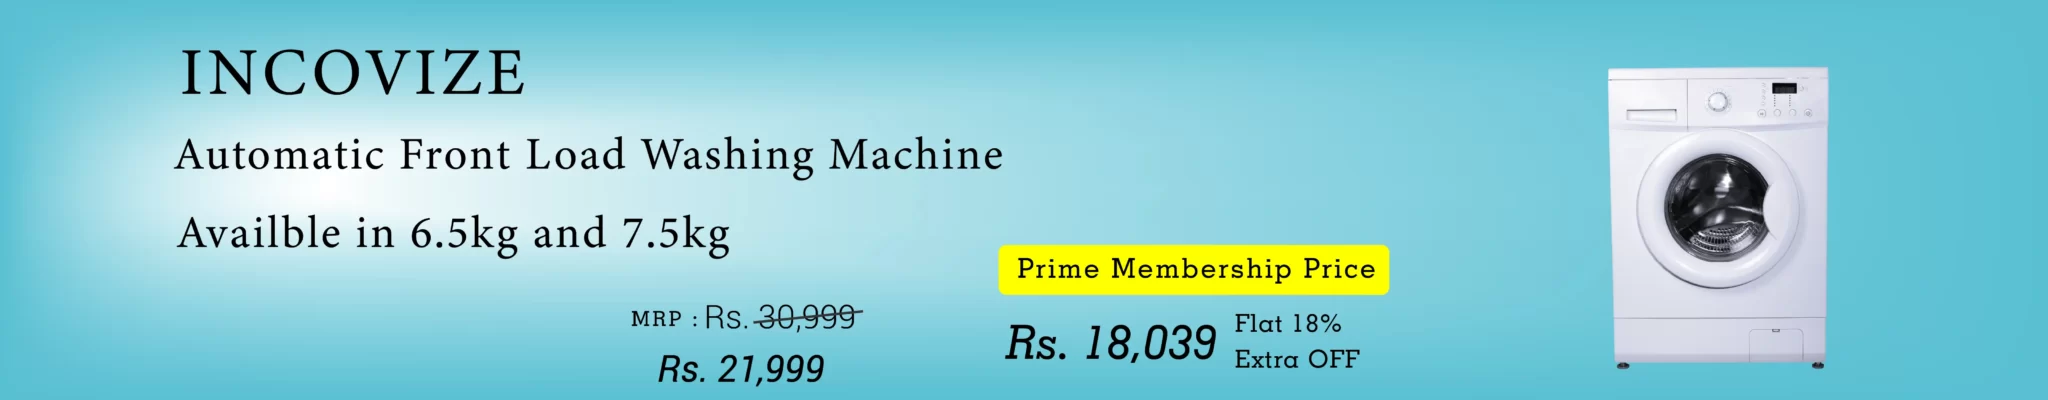 prime price washing lap-01